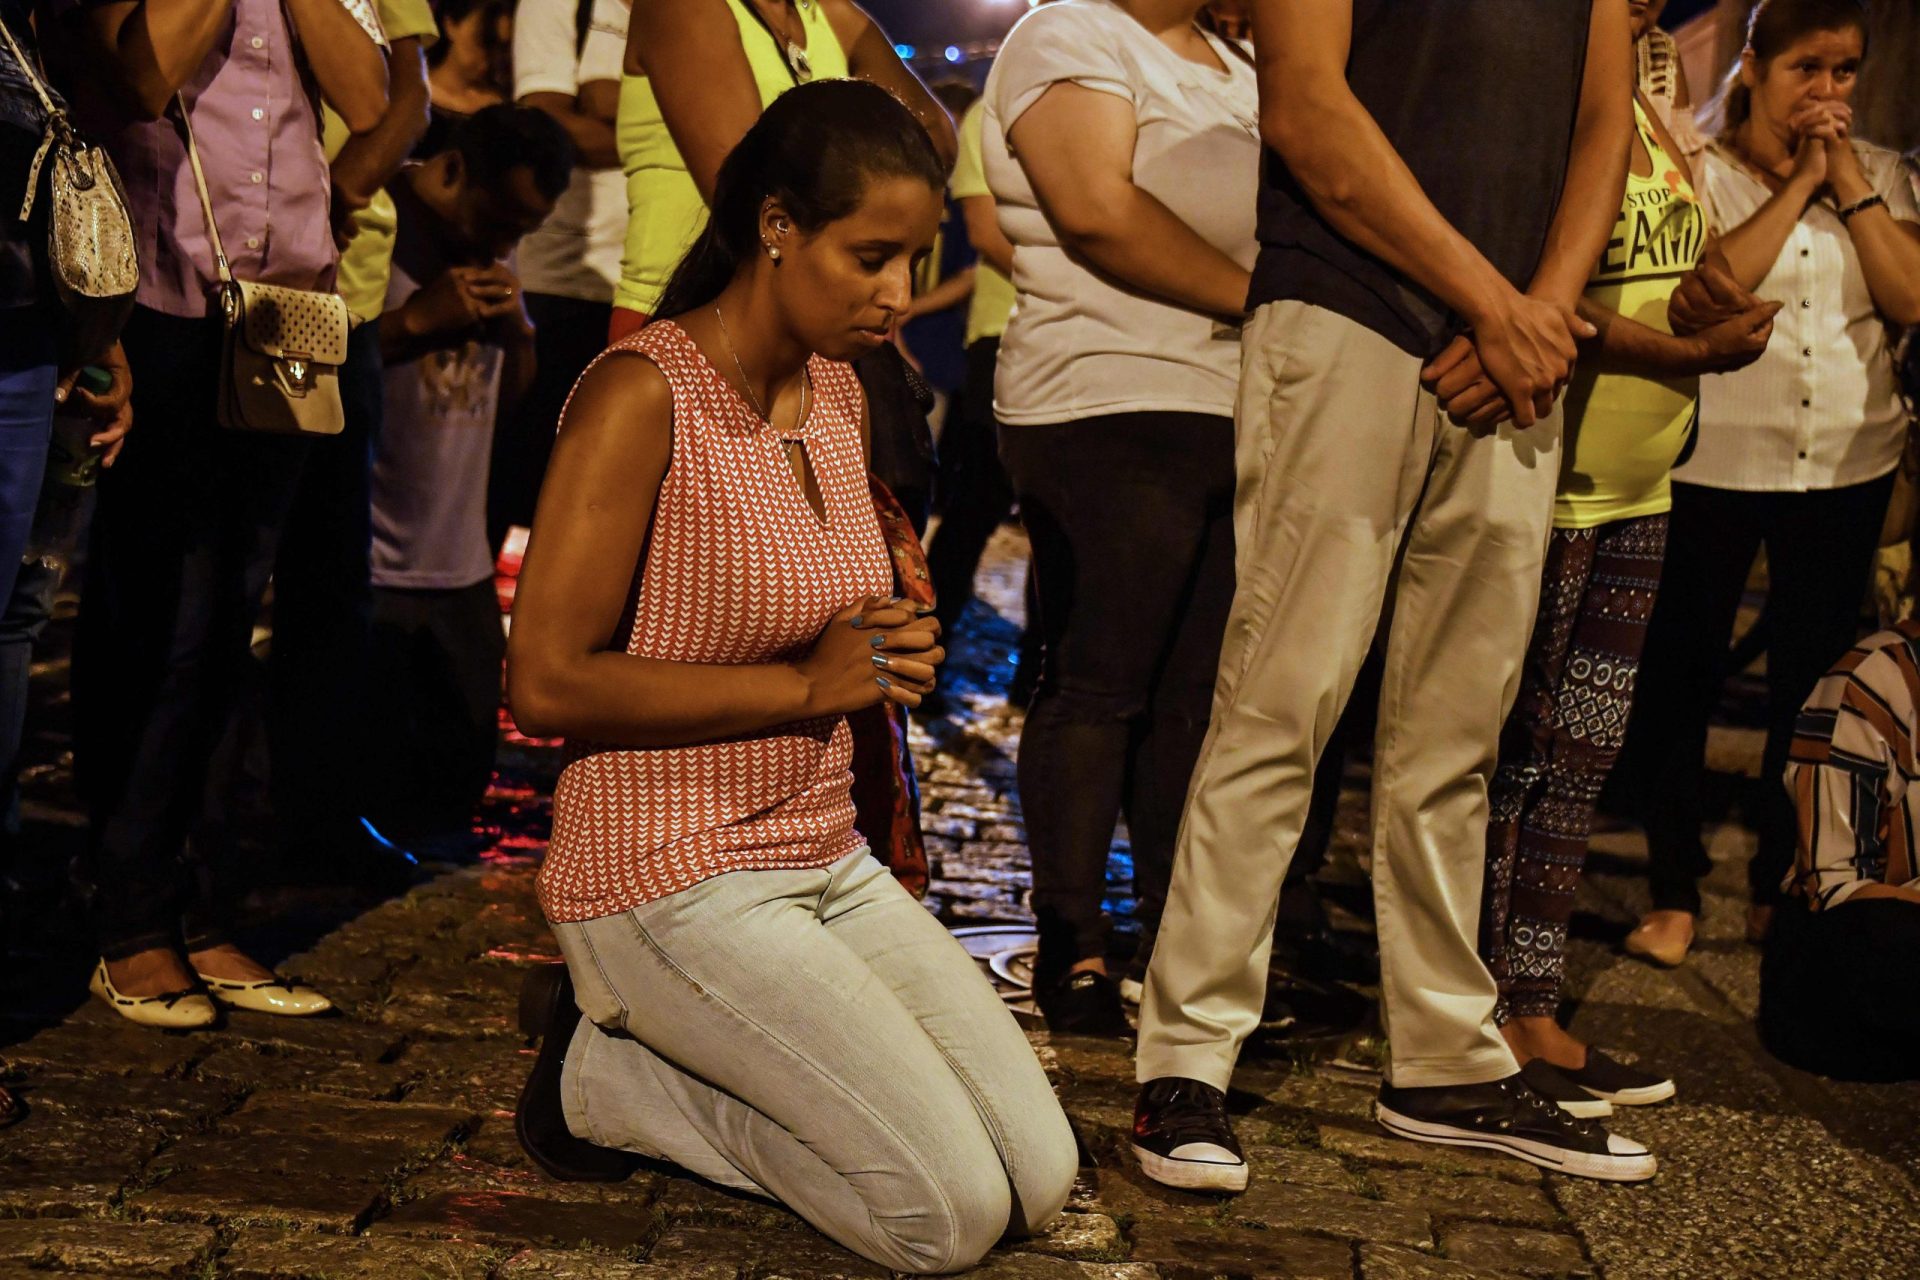 Autores de tiroteio em S. Paulo eram ex-alunos da escola